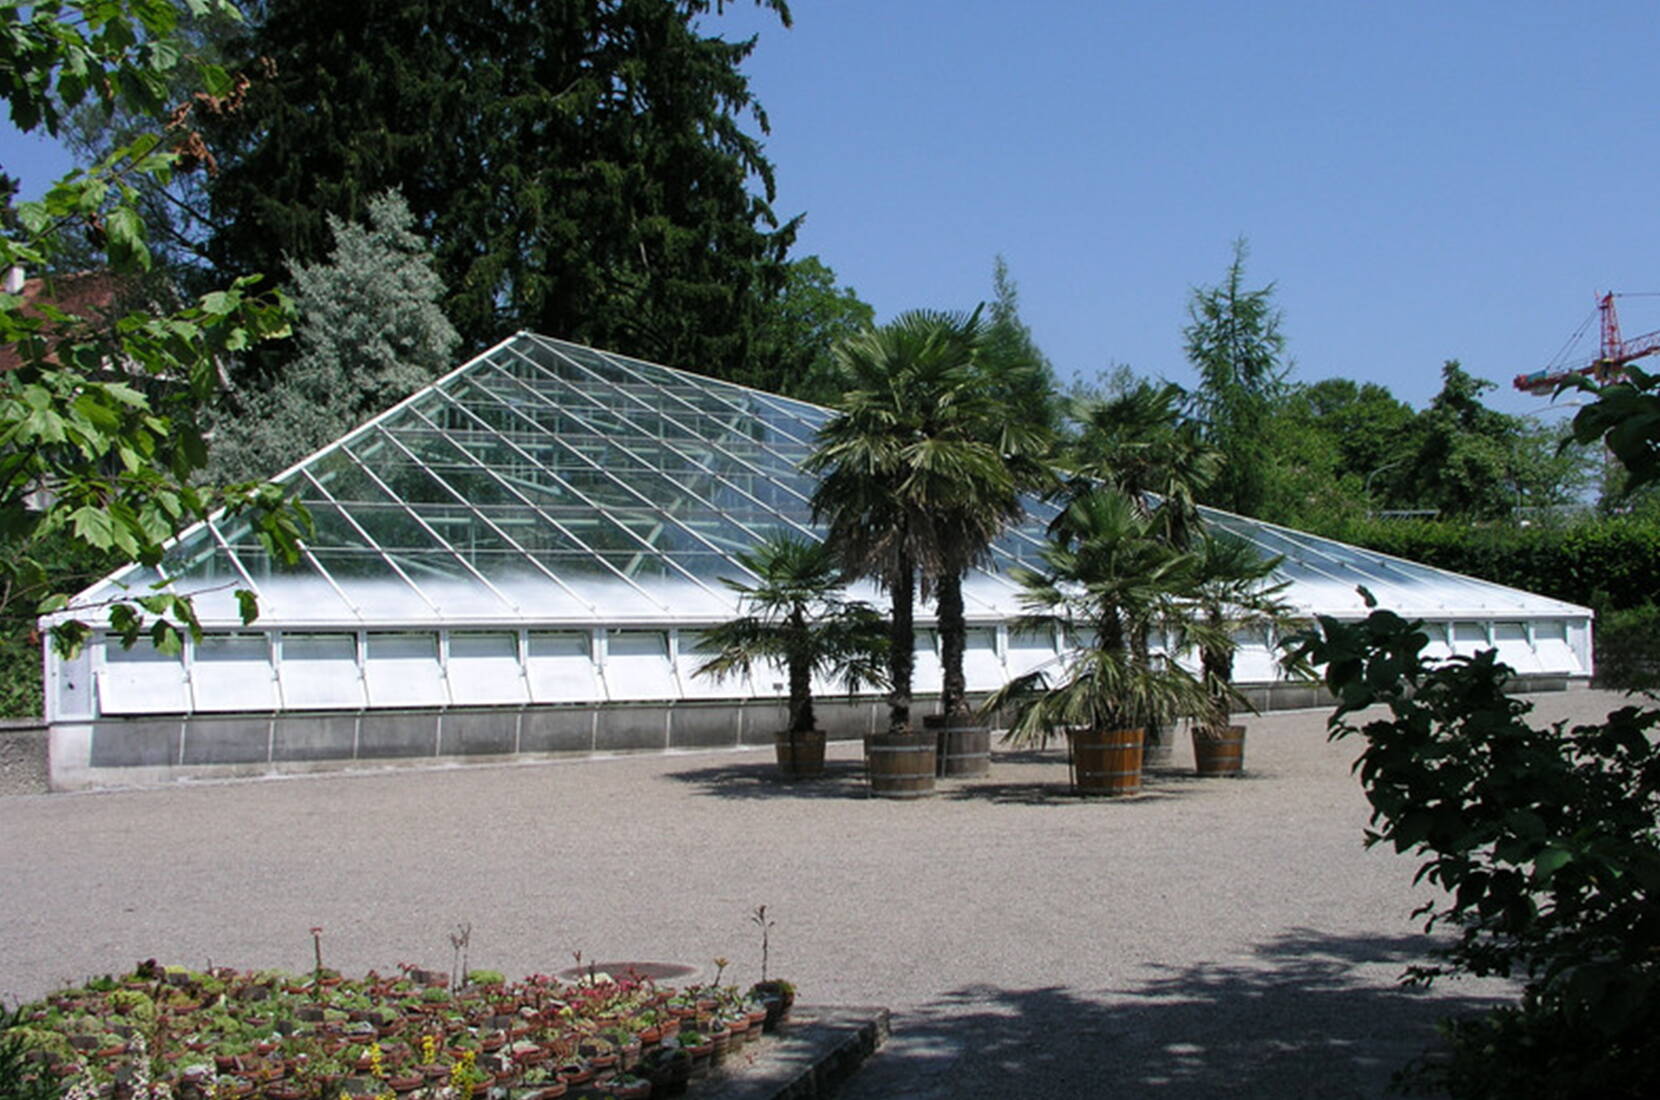 Familienausflug Botanischer Garten St. Gallen. Im Botanischen Garten leben rund 8000 verschiedene Pflanzenarten aus aller Welt in rund 20 verschiedenen Abteilungen. Die Freilandanlagen sind nach der geografischen Herkunft, ihrer Nutzung und nach schulischen Gesichtspunkten angelegt.